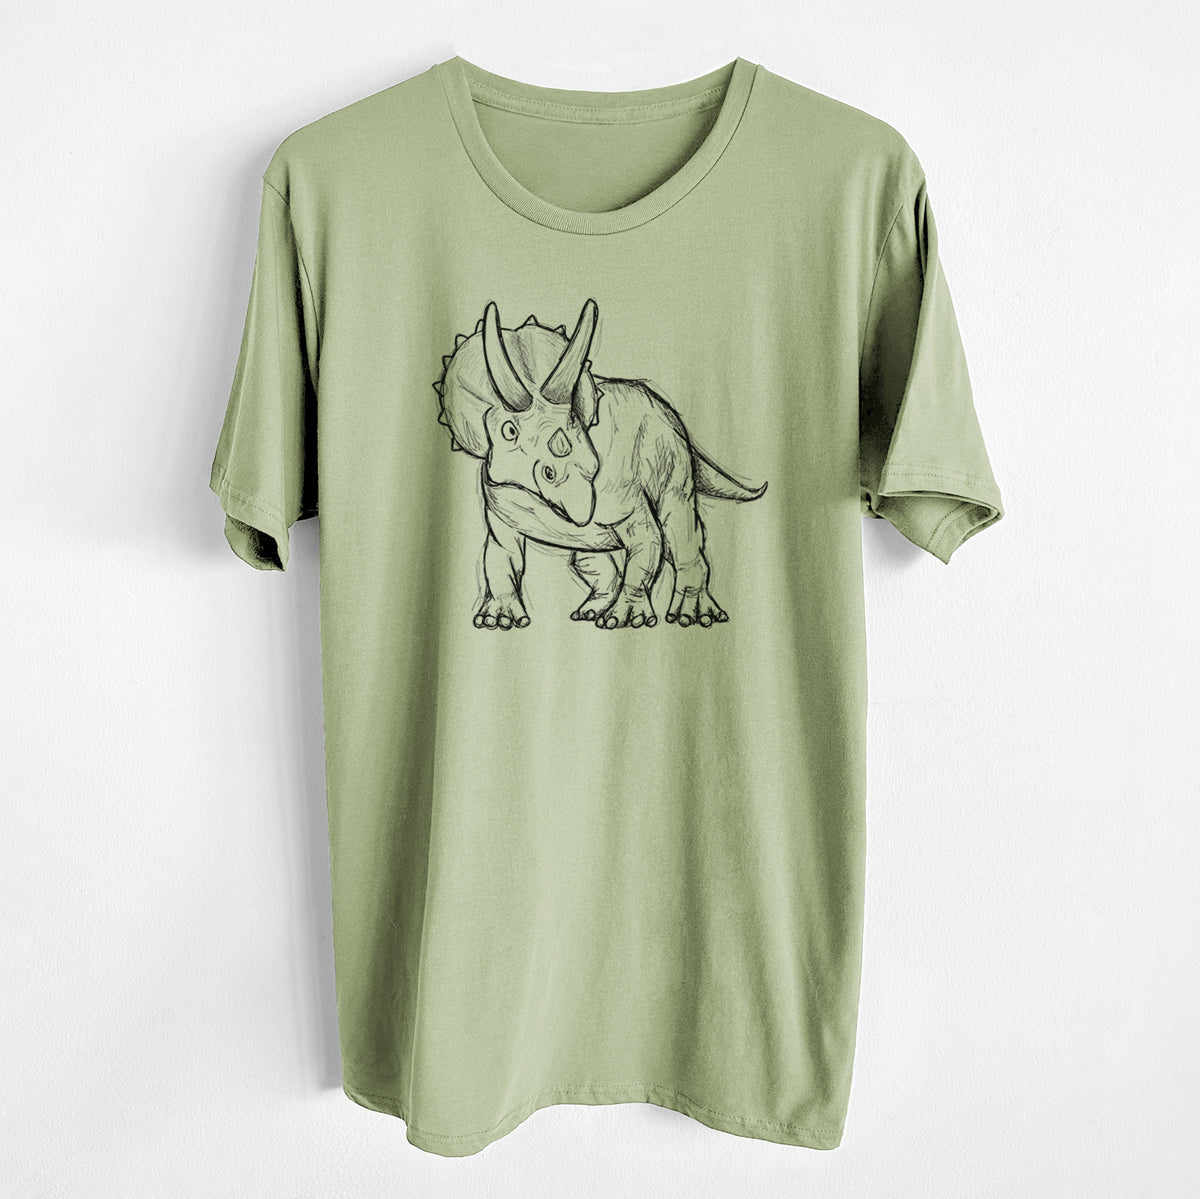 Triceratops Horridus - Unisex Crewneck - Made in USA - 100% Organic Cotton